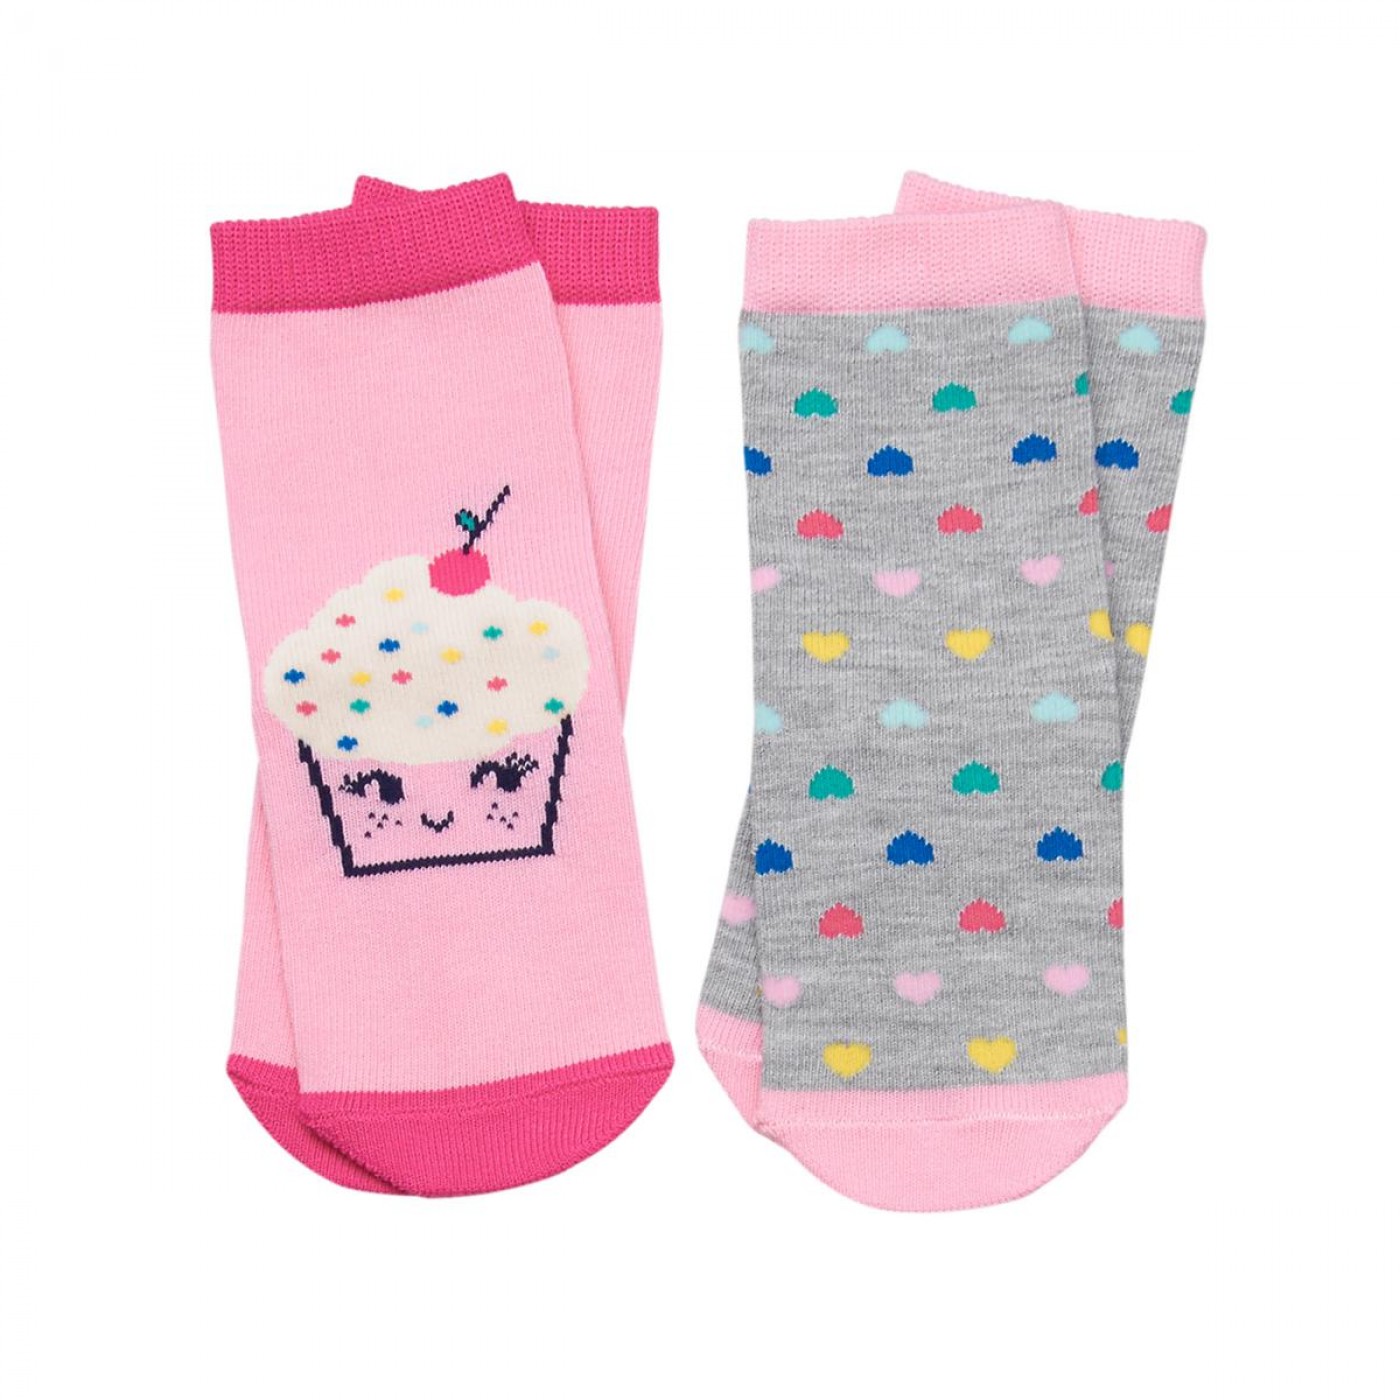 冰淇淋彩色愛心襪兩件組